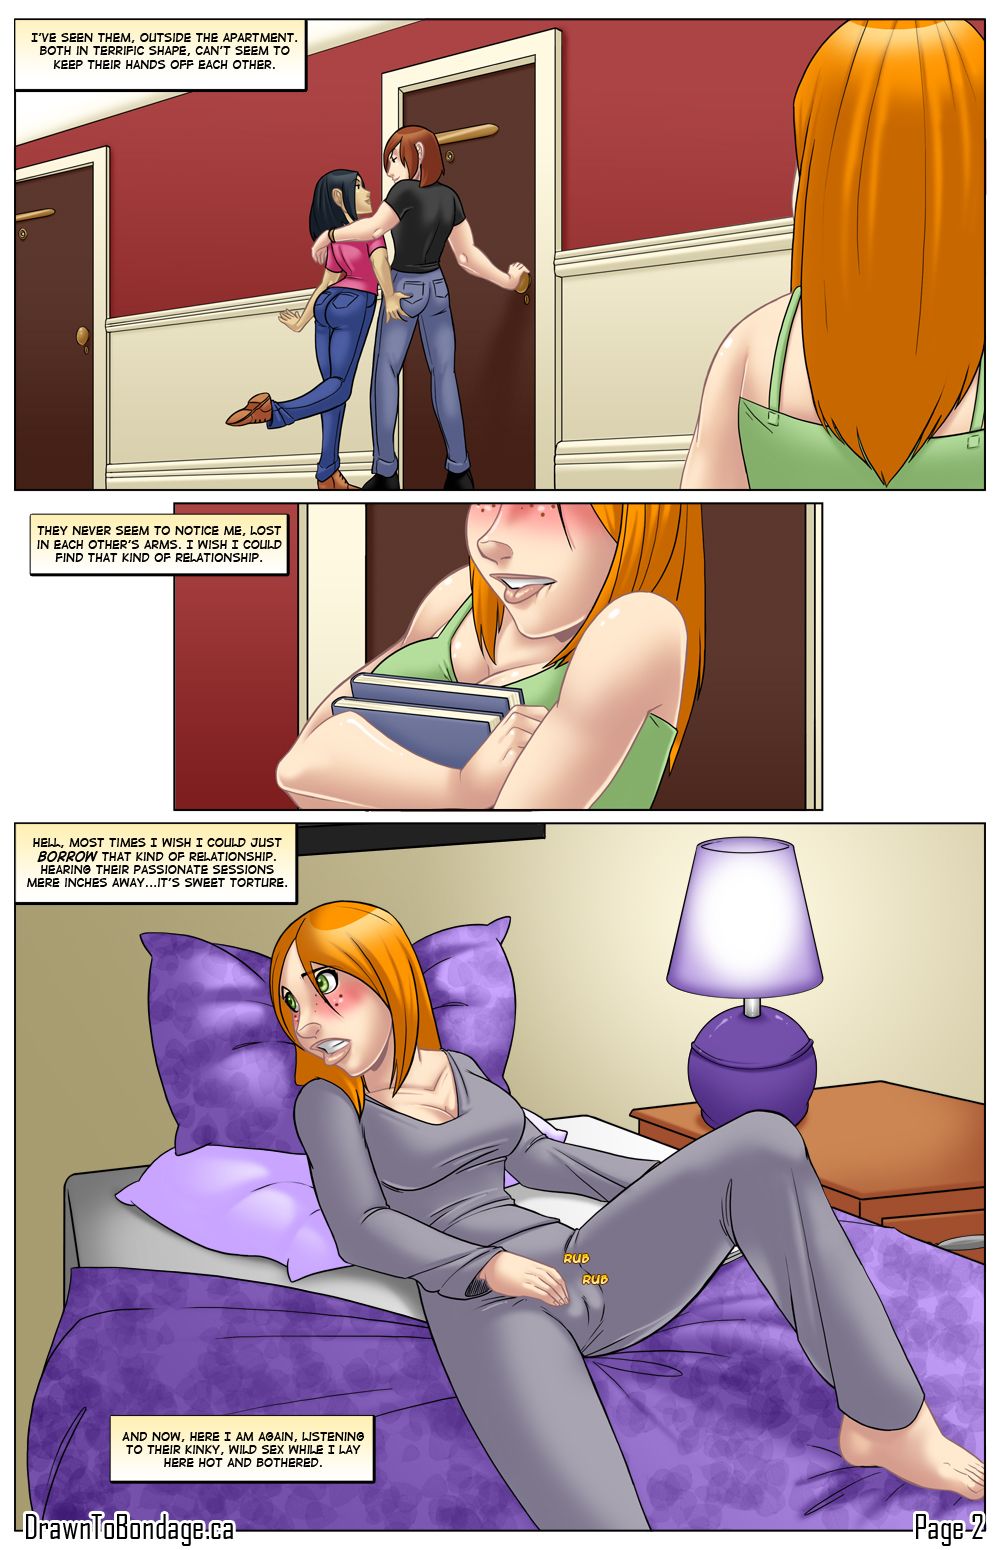 गर्म बंधक परपीड़न सेक्स कॉमिक्स के साथ लाल बालों वाली वृद्धि हुई :द्वारा: अंधकार किशोर लड़कियों